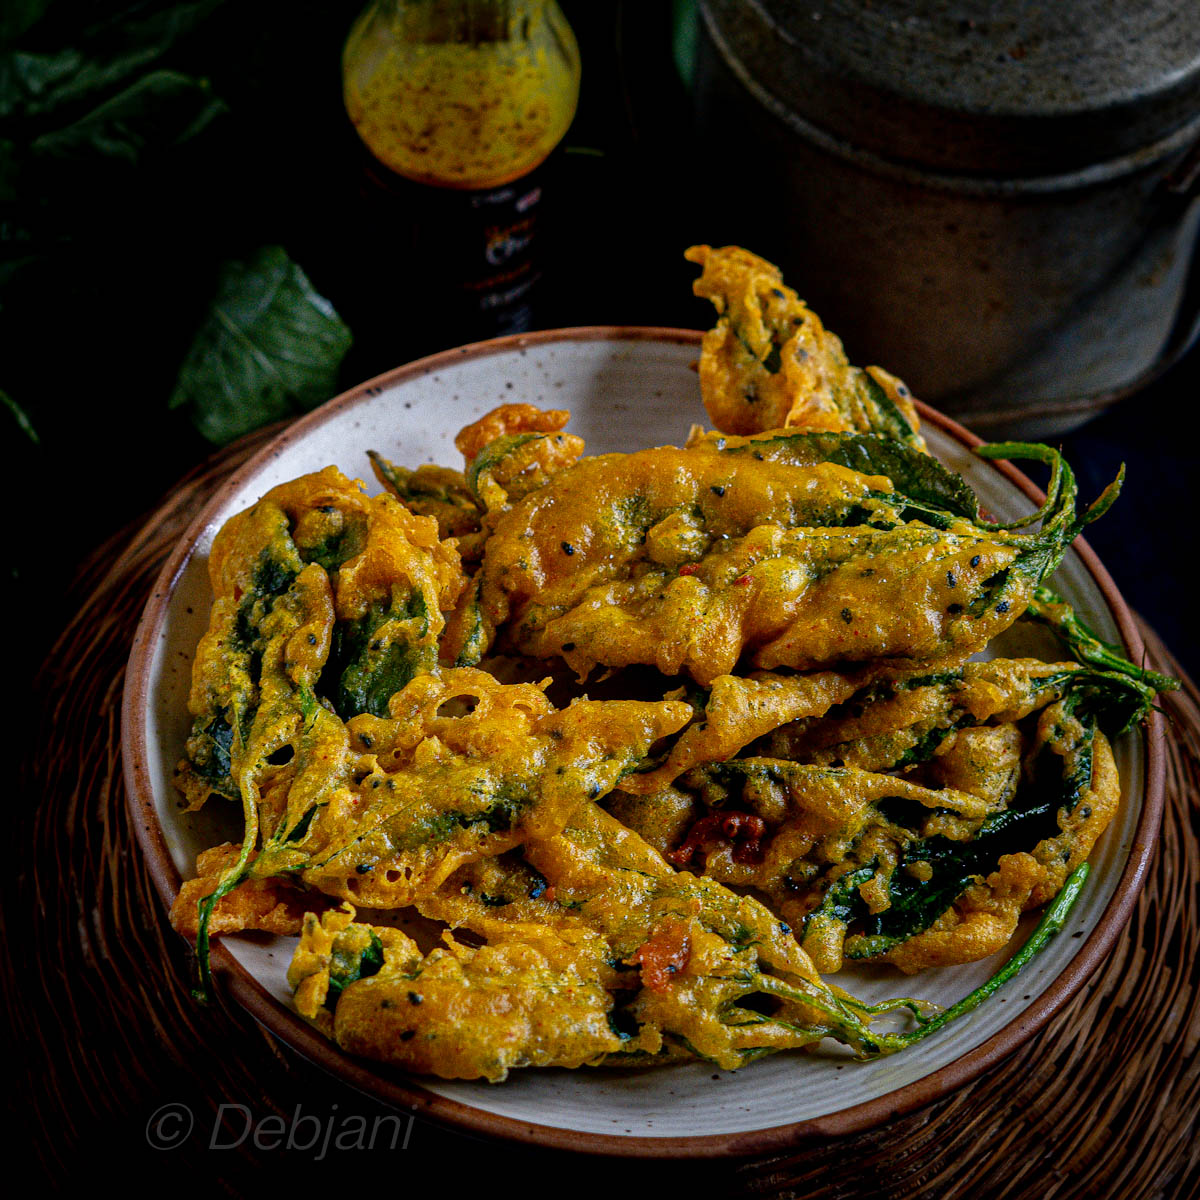 %Bengali Pat Patar Bora recipe Debjanir Rannaghar